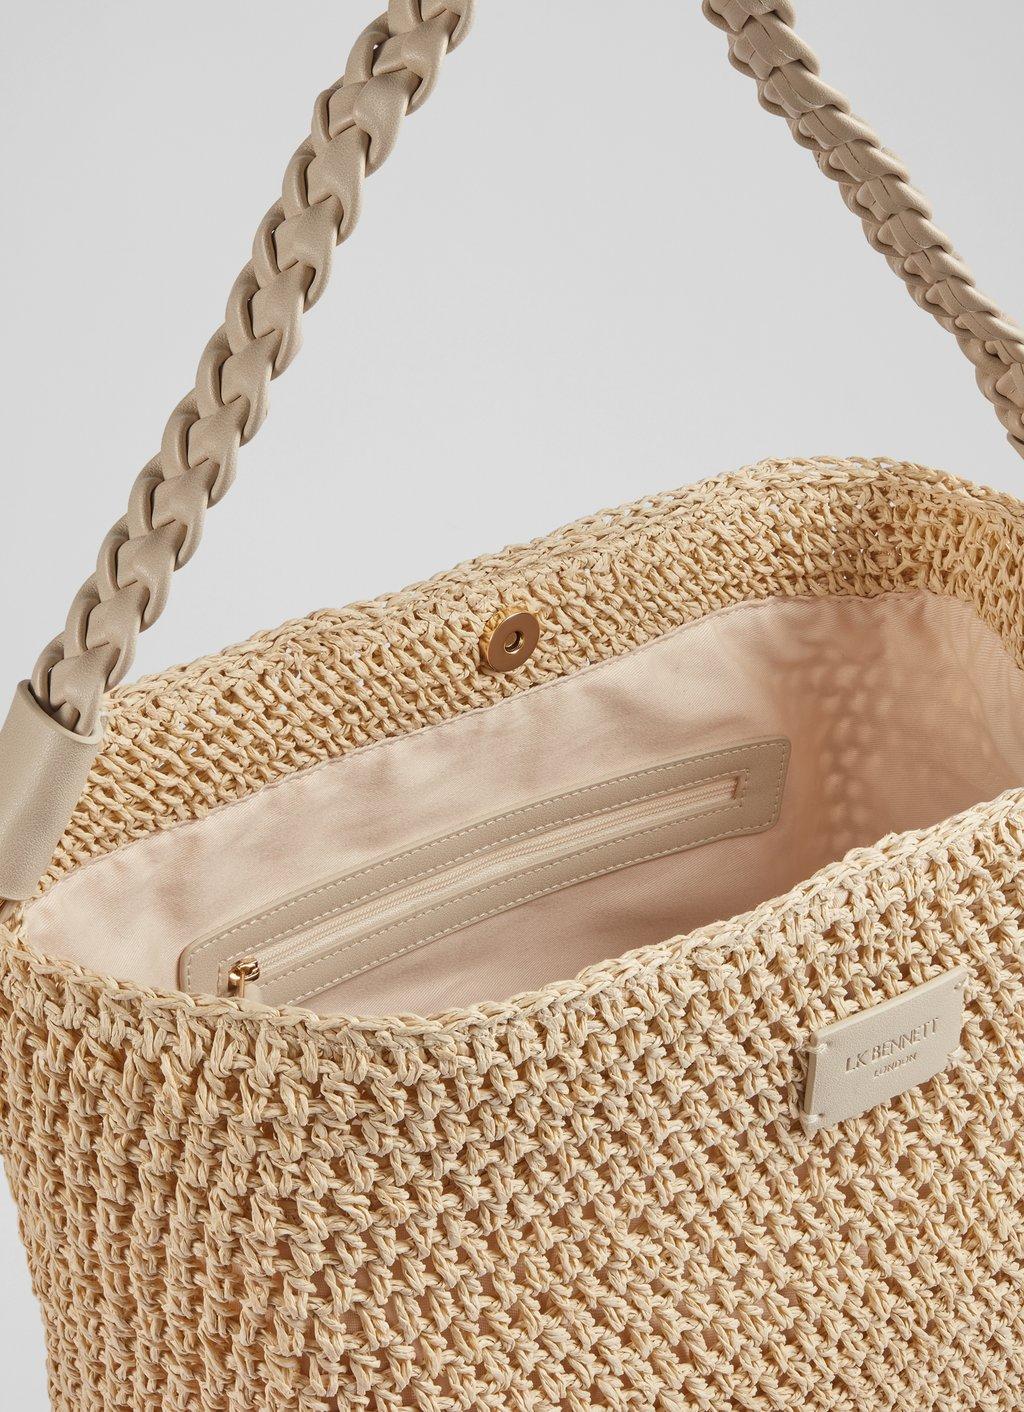 Straw Bag Summer Beach Shoulder Bags for Women NEW Raffia Luxury